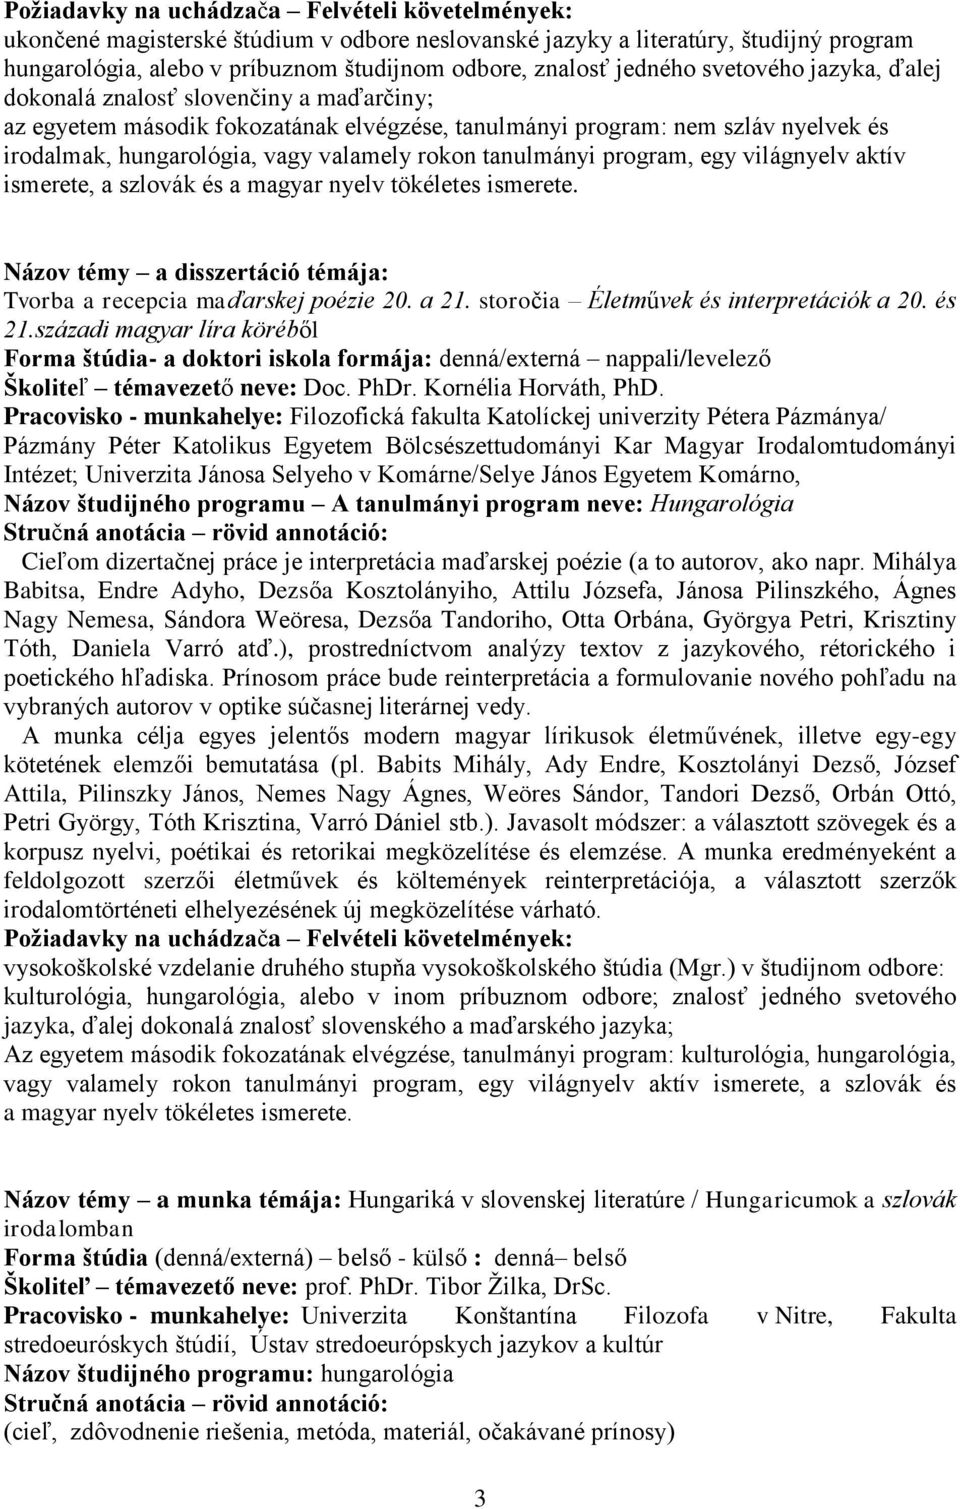 storočia Életművek és interpretációk a 20. és 21.századi magyar líra köréből Školiteľ témavezető neve: Doc. PhDr. Kornélia Horváth, PhD.